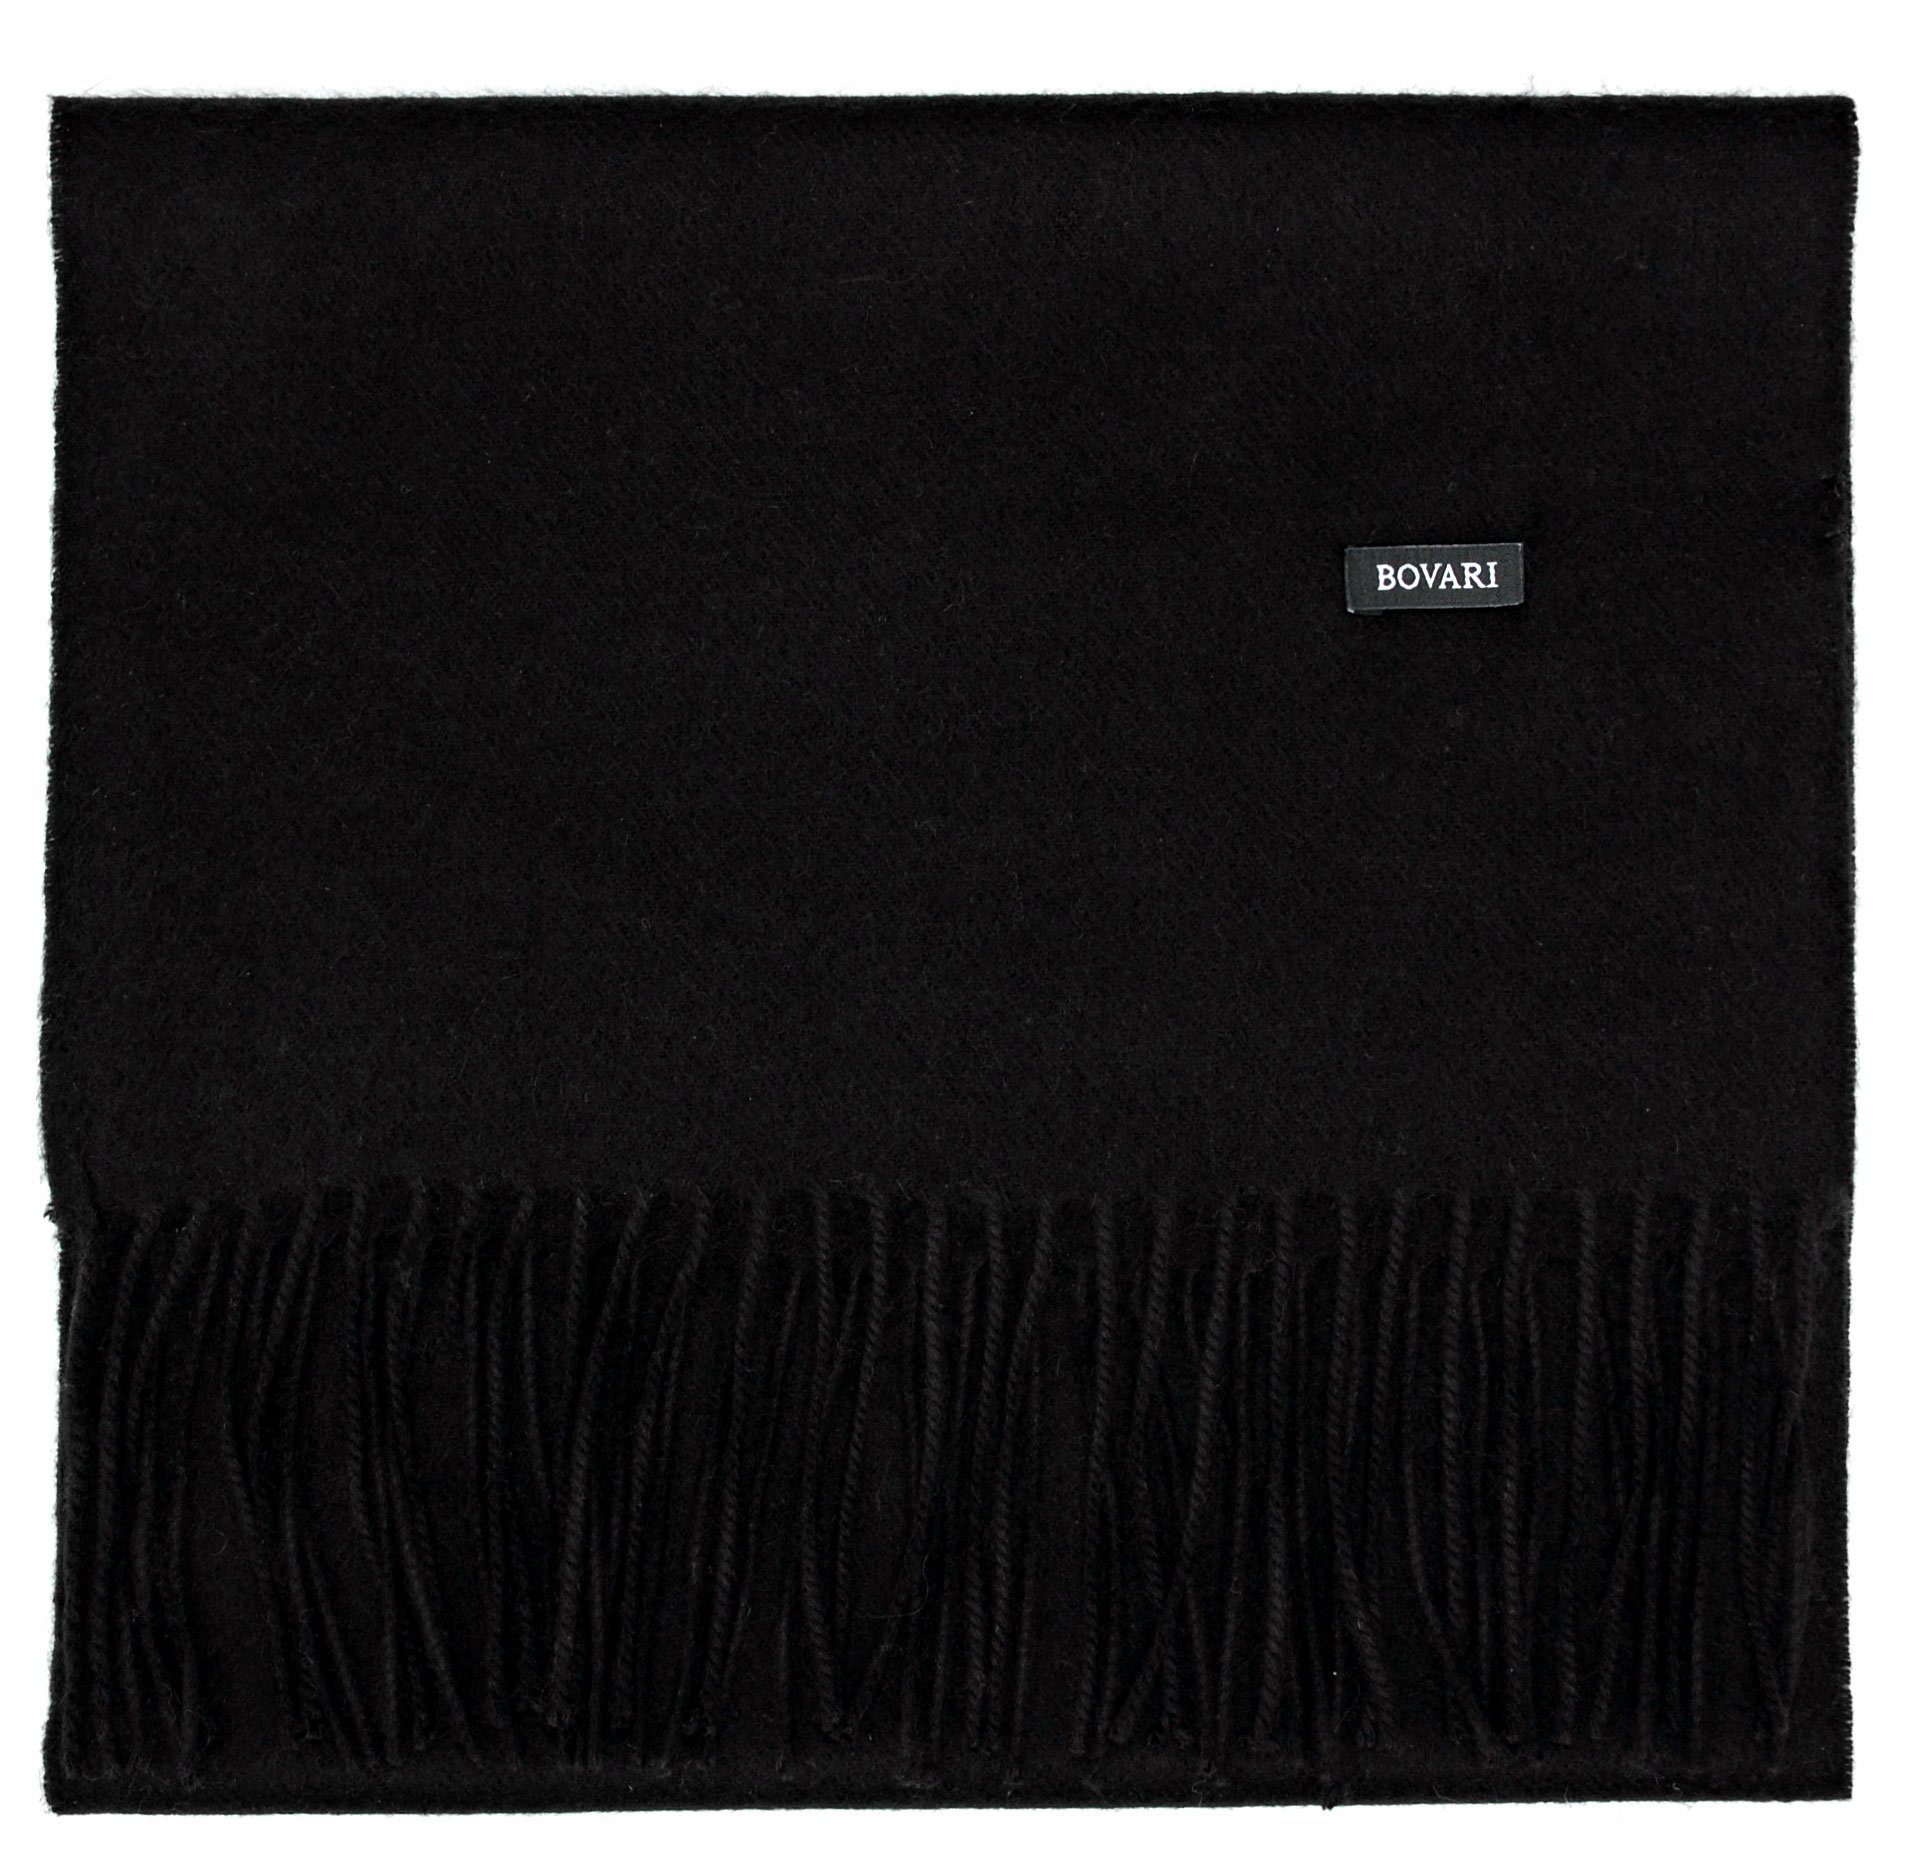 Bovari Kaschmirschal Kaschmir Schal Damen – 100% Kaschmir/Cashmere – Premium Qualität, 180 x 31 cm schwarz / black